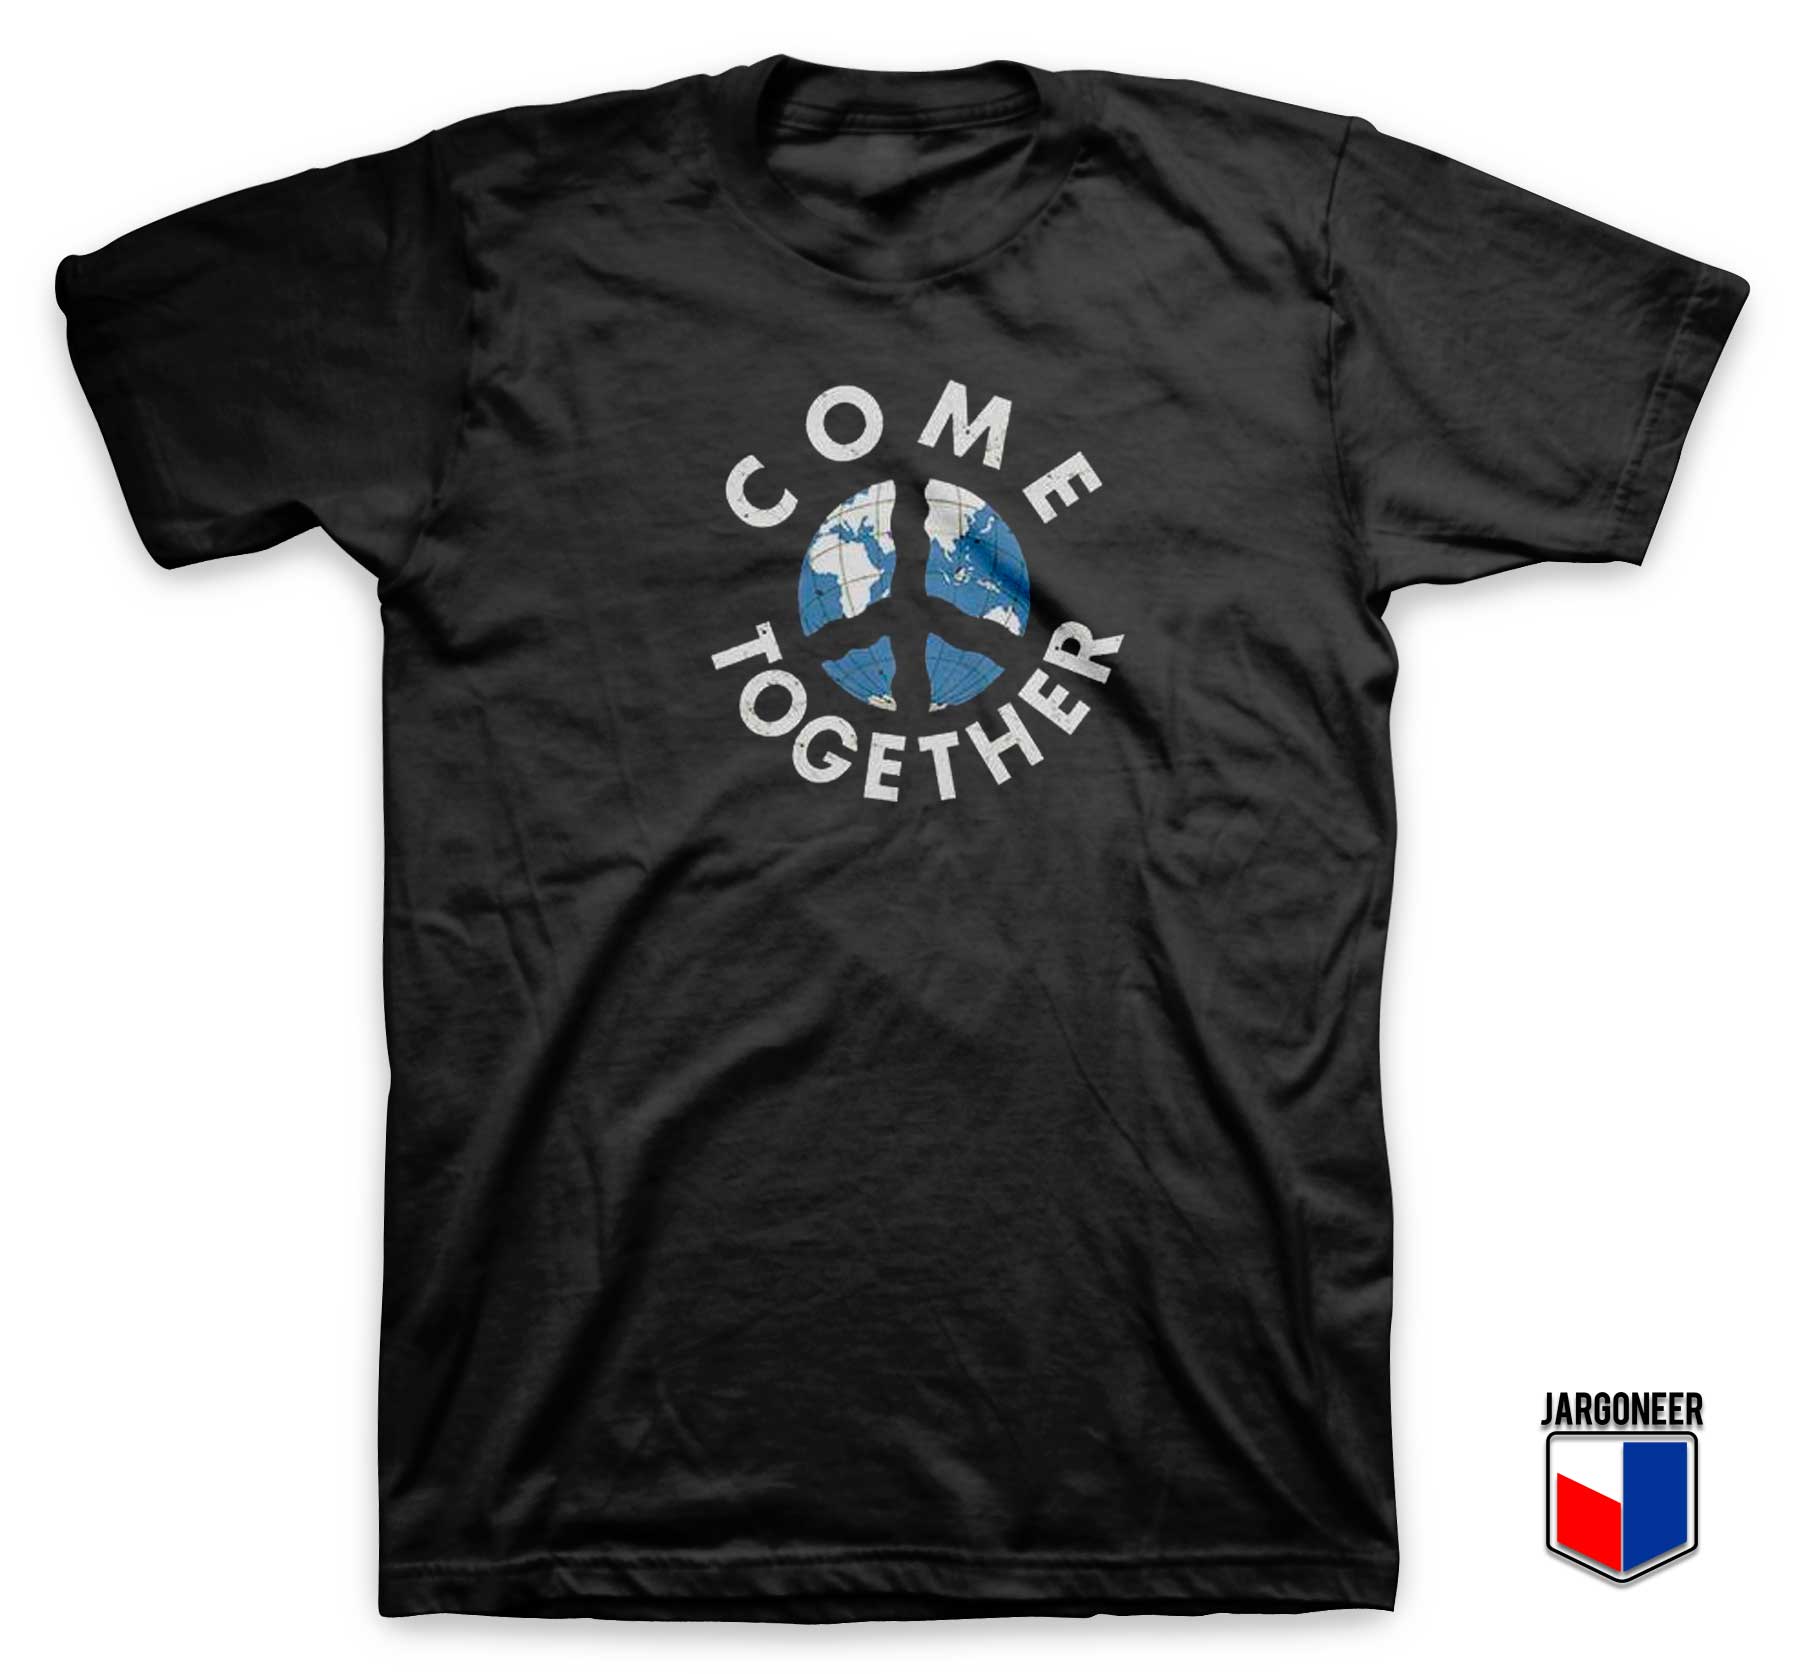 Come Together T Shirt - Shop Unique Graphic Cool Shirt Designs